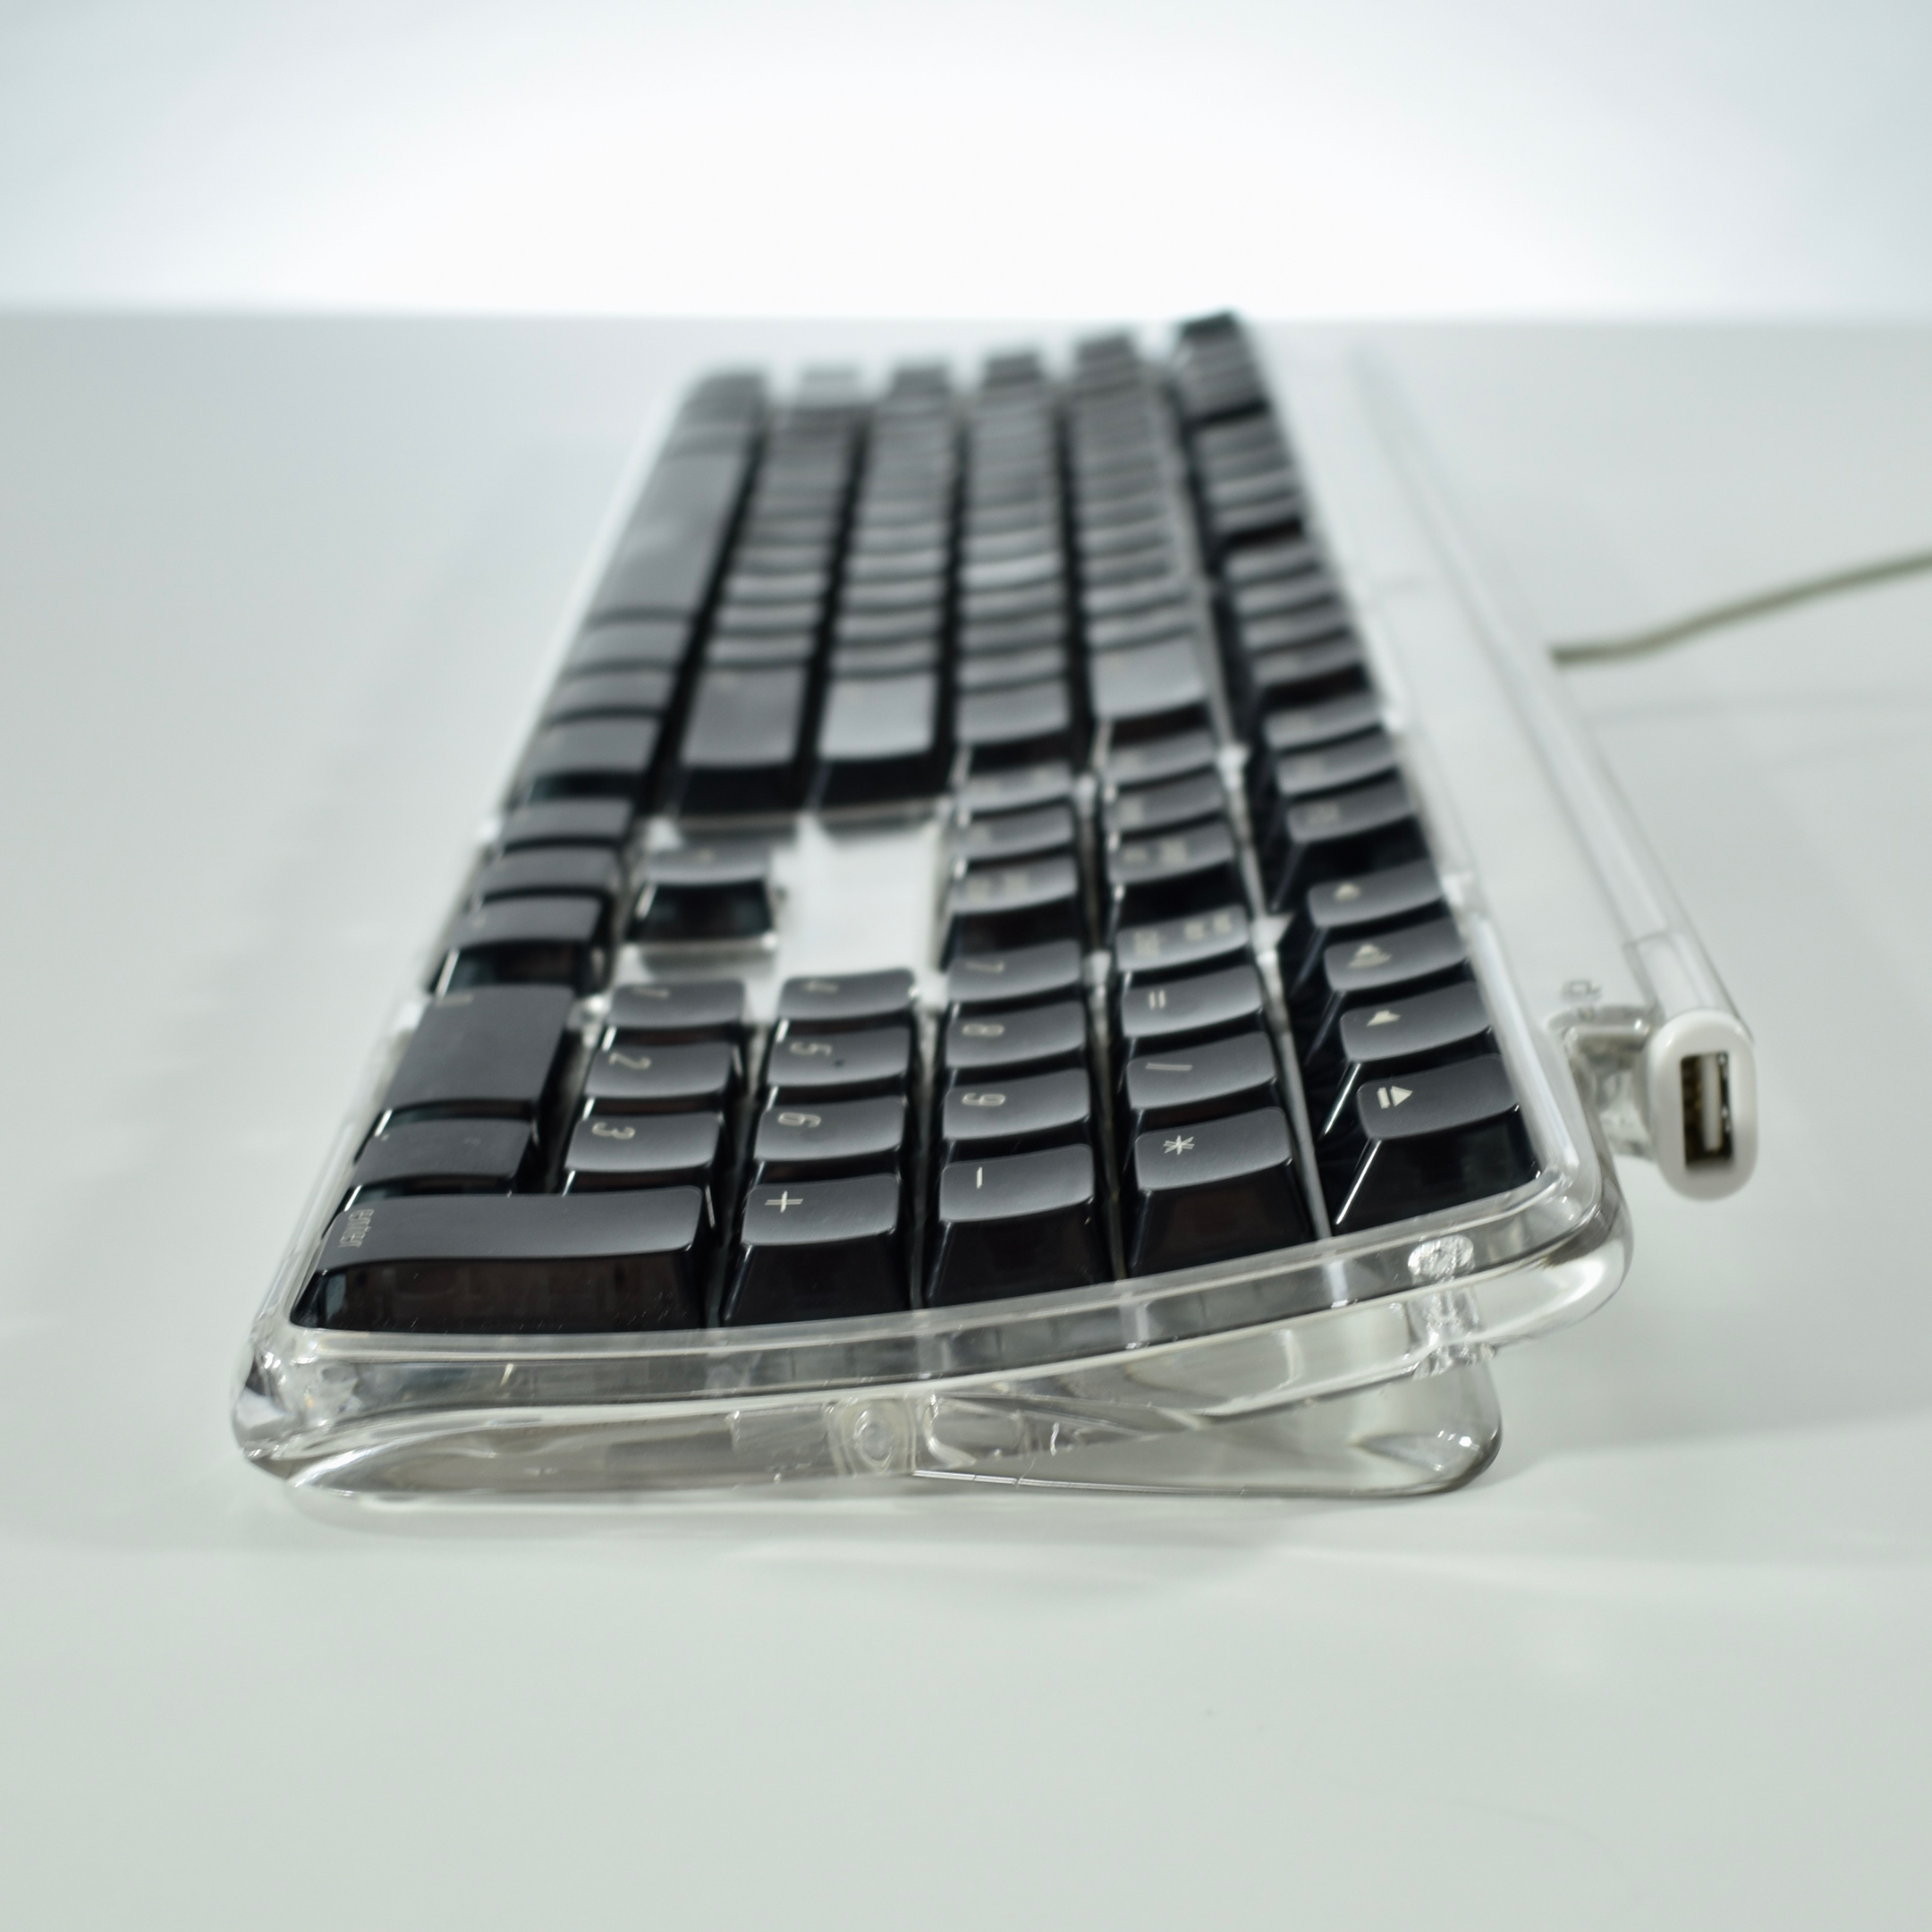 microsoft keyboard 2000 for mac